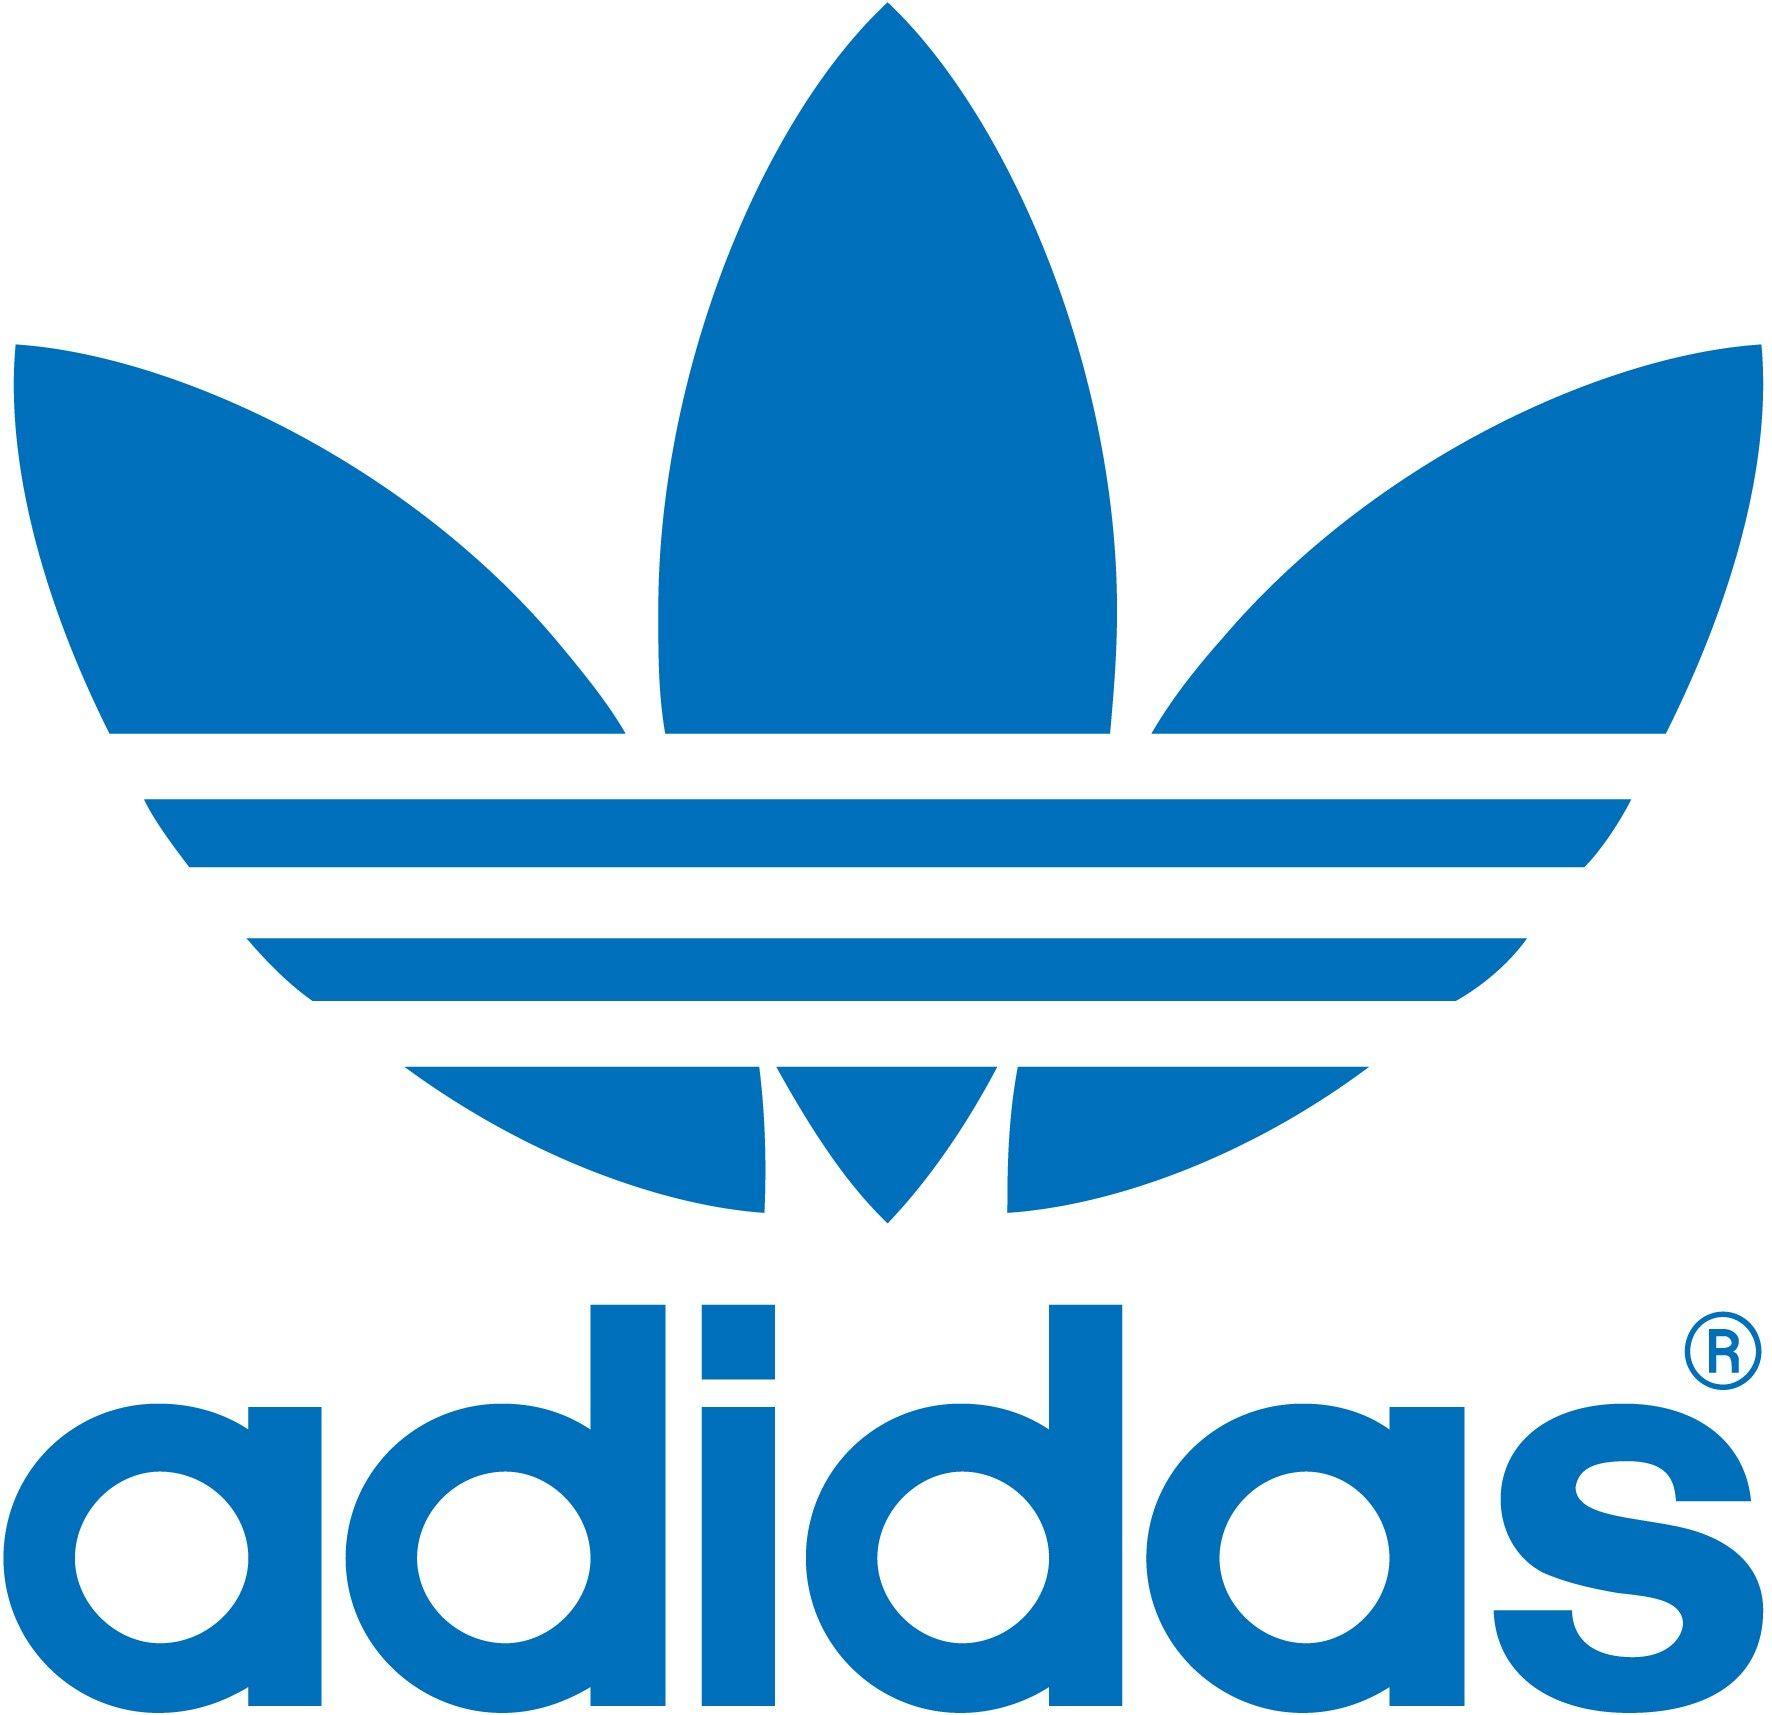 Old Adidas Logo - Corporate Logo Redesigns That Just Work | Logos | Pinterest | Logos ...